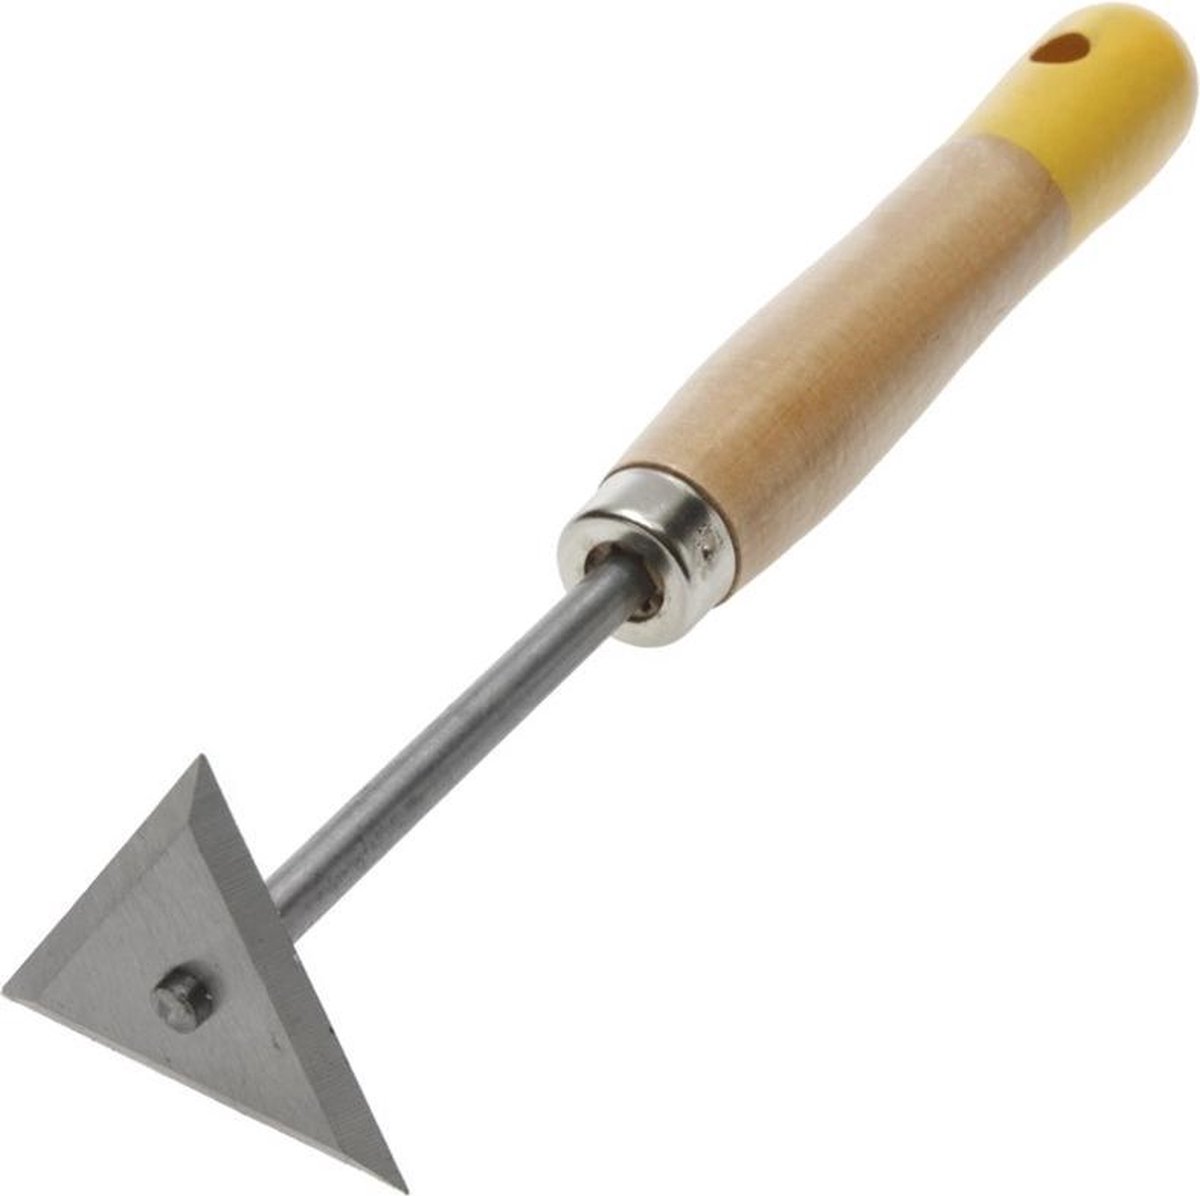 ANZA verfkrabber/krabstaal - lange houten steel - driehoek 80mm - 1001002 - Anza